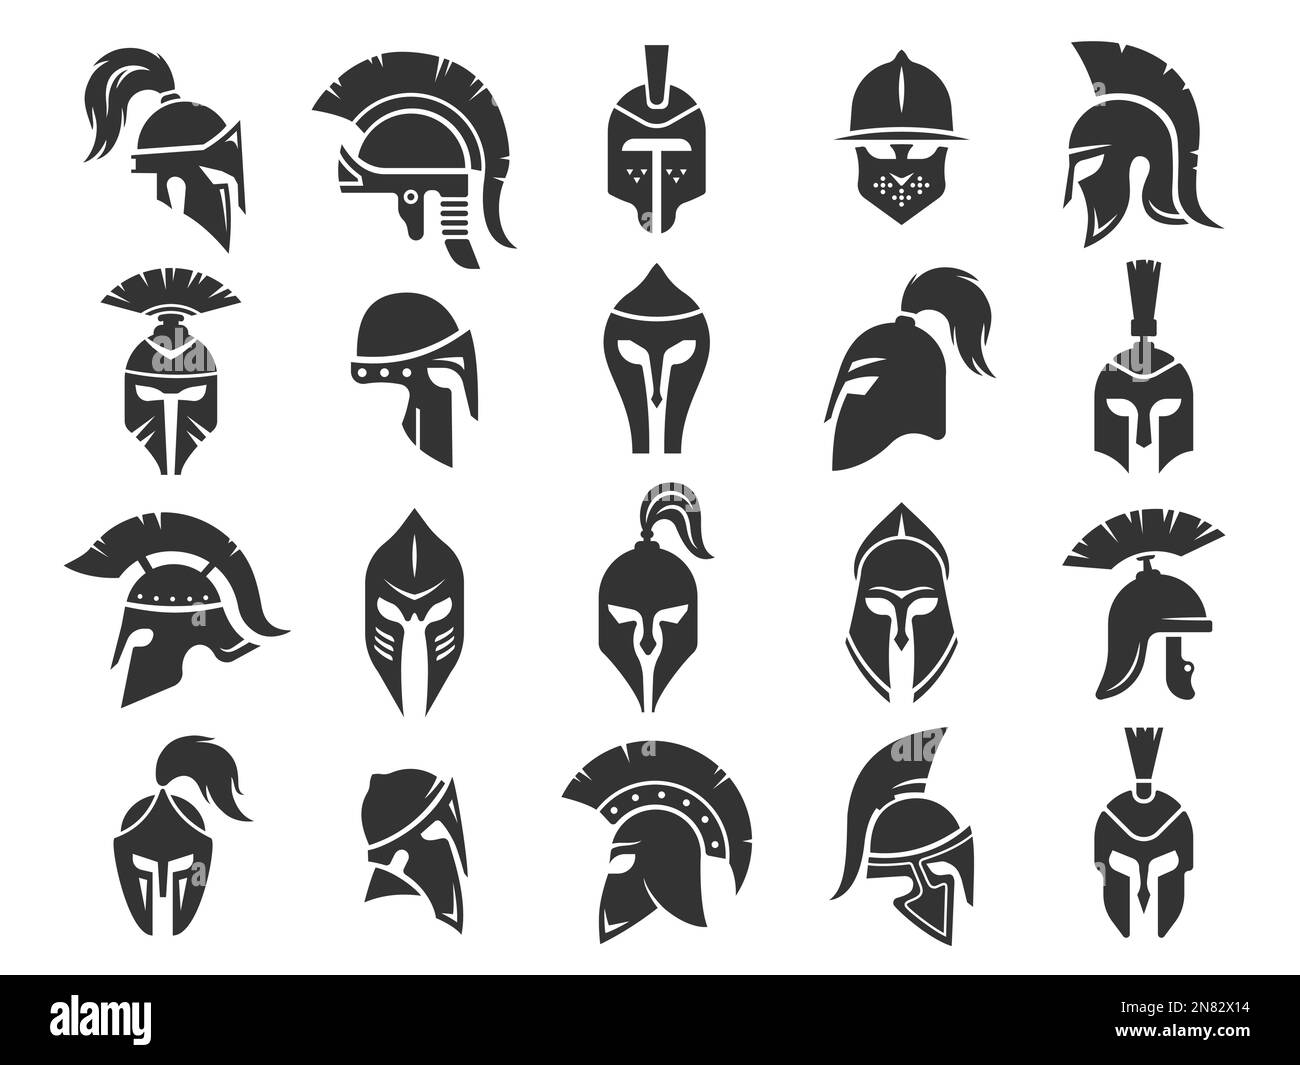 Spartan schwarze Helme. antiker römischer Gladiatorenschutz, einfarbige Silhouetten von mittelalterlicher klassischer griechischer Kriegsausrüstung. Vektor Stock Vektor